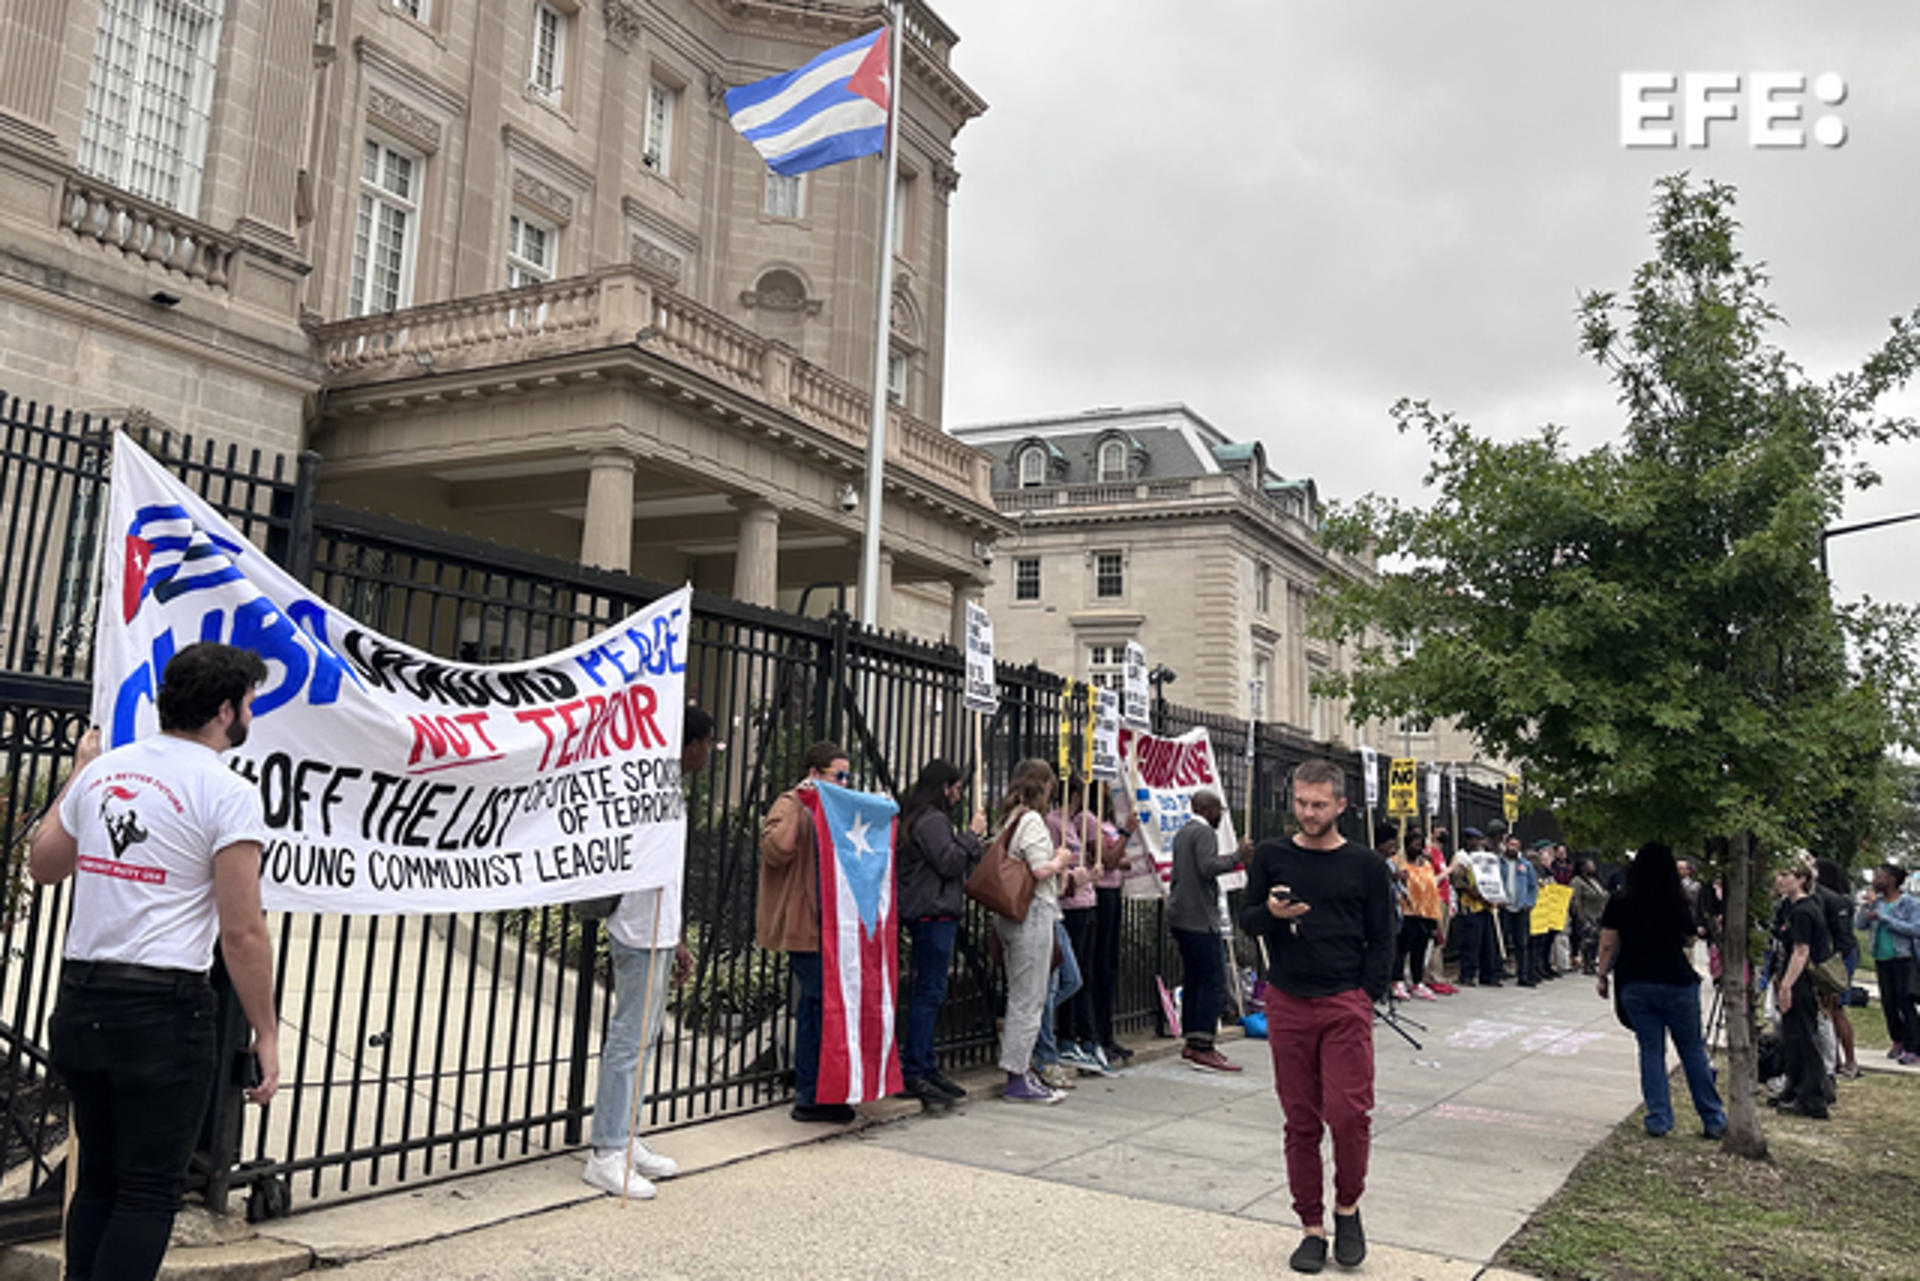 La embajada de Cuba en EE.UU. agradece el apoyo recibido tras el ataque con cócteles molotov